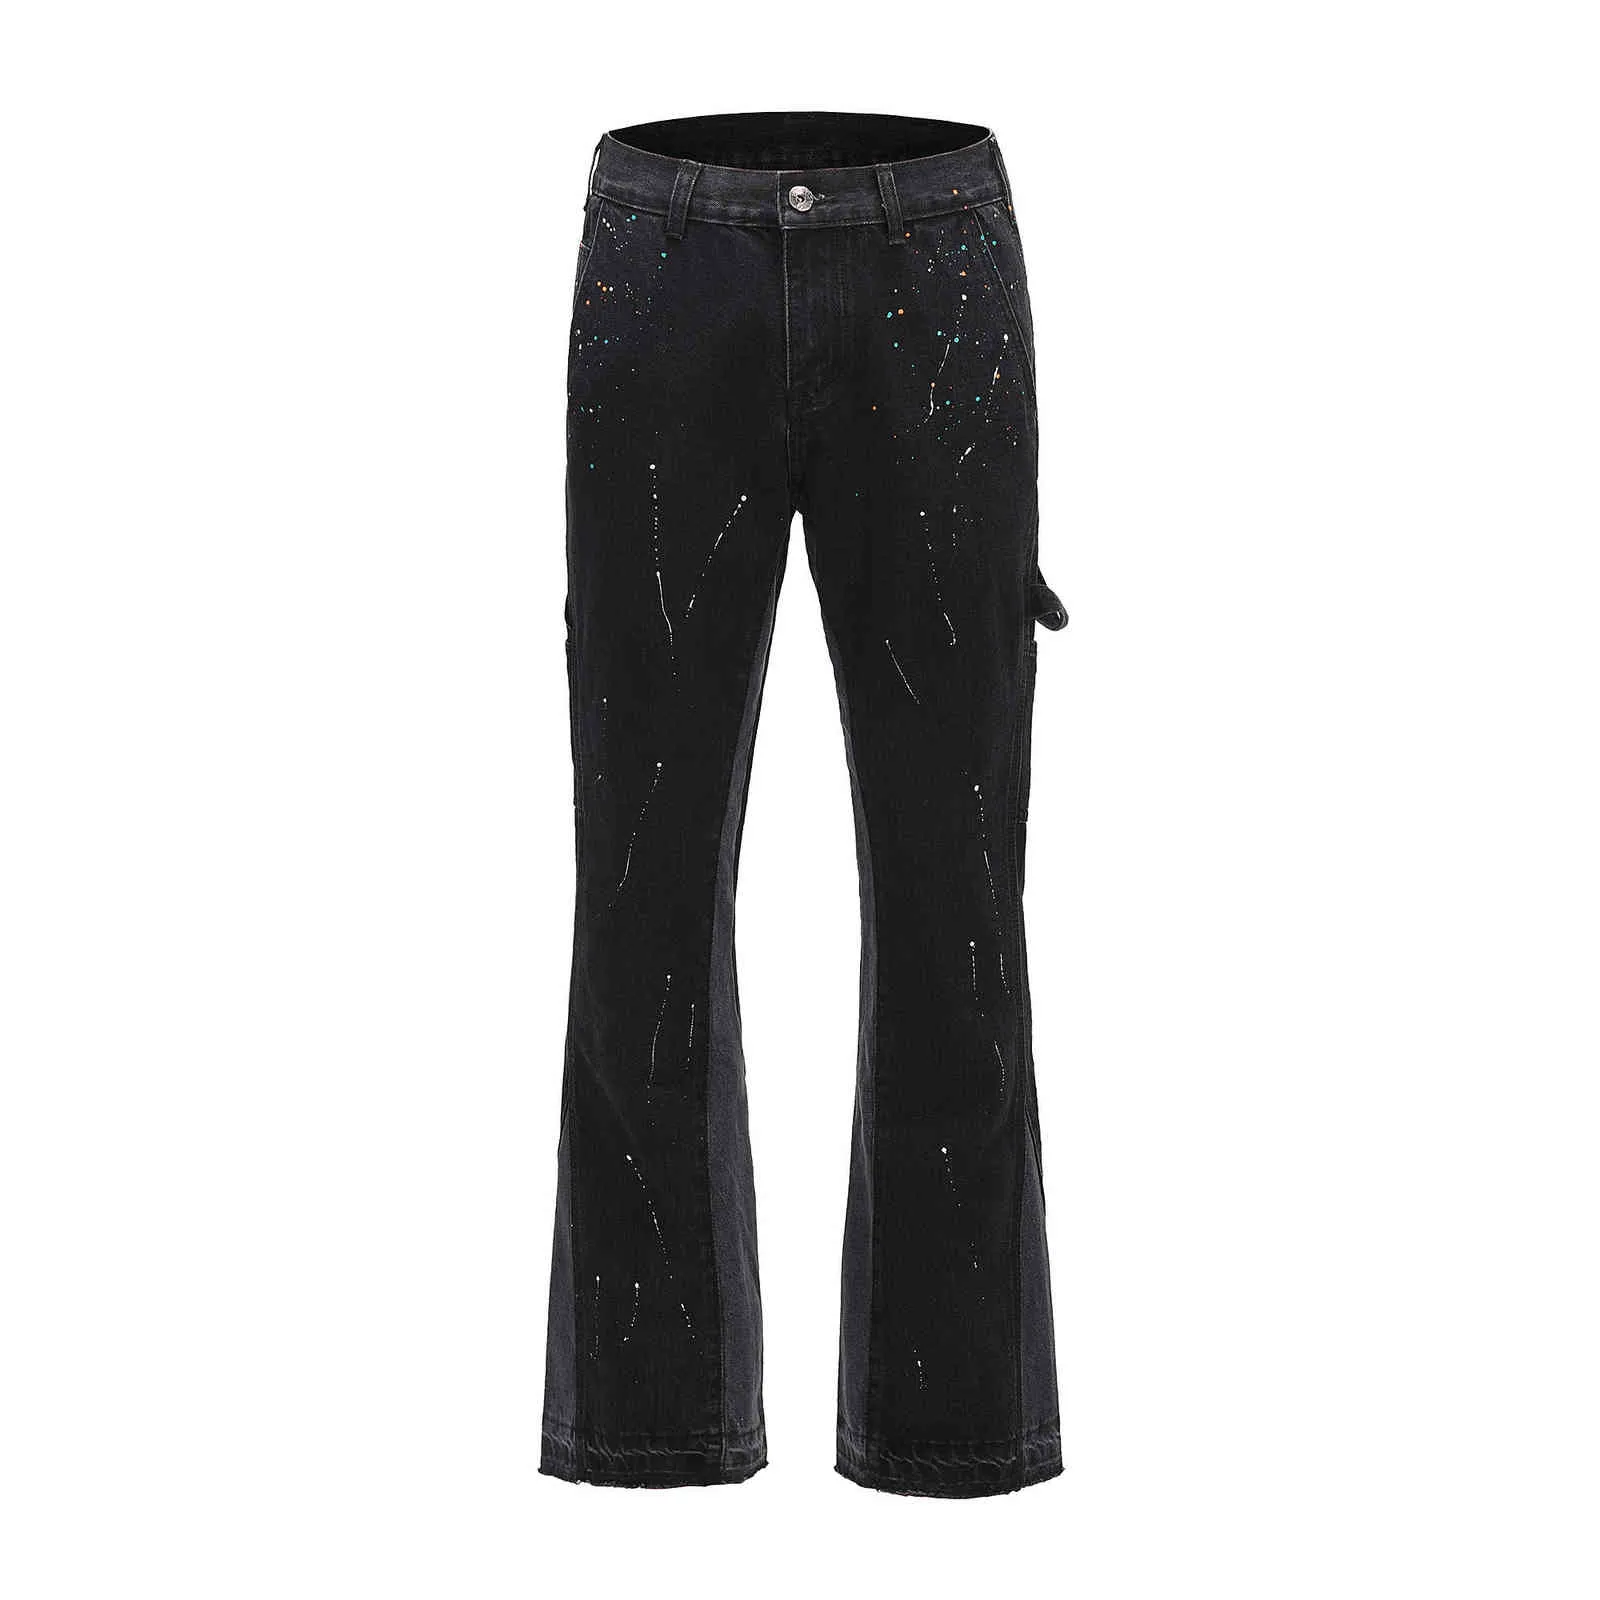 Urban Streetwear Flare Pants Black Wide Leg Jeans Hip Hop Splashed Ink Trousers Men Patchwork Slim Fit Denim for 211111